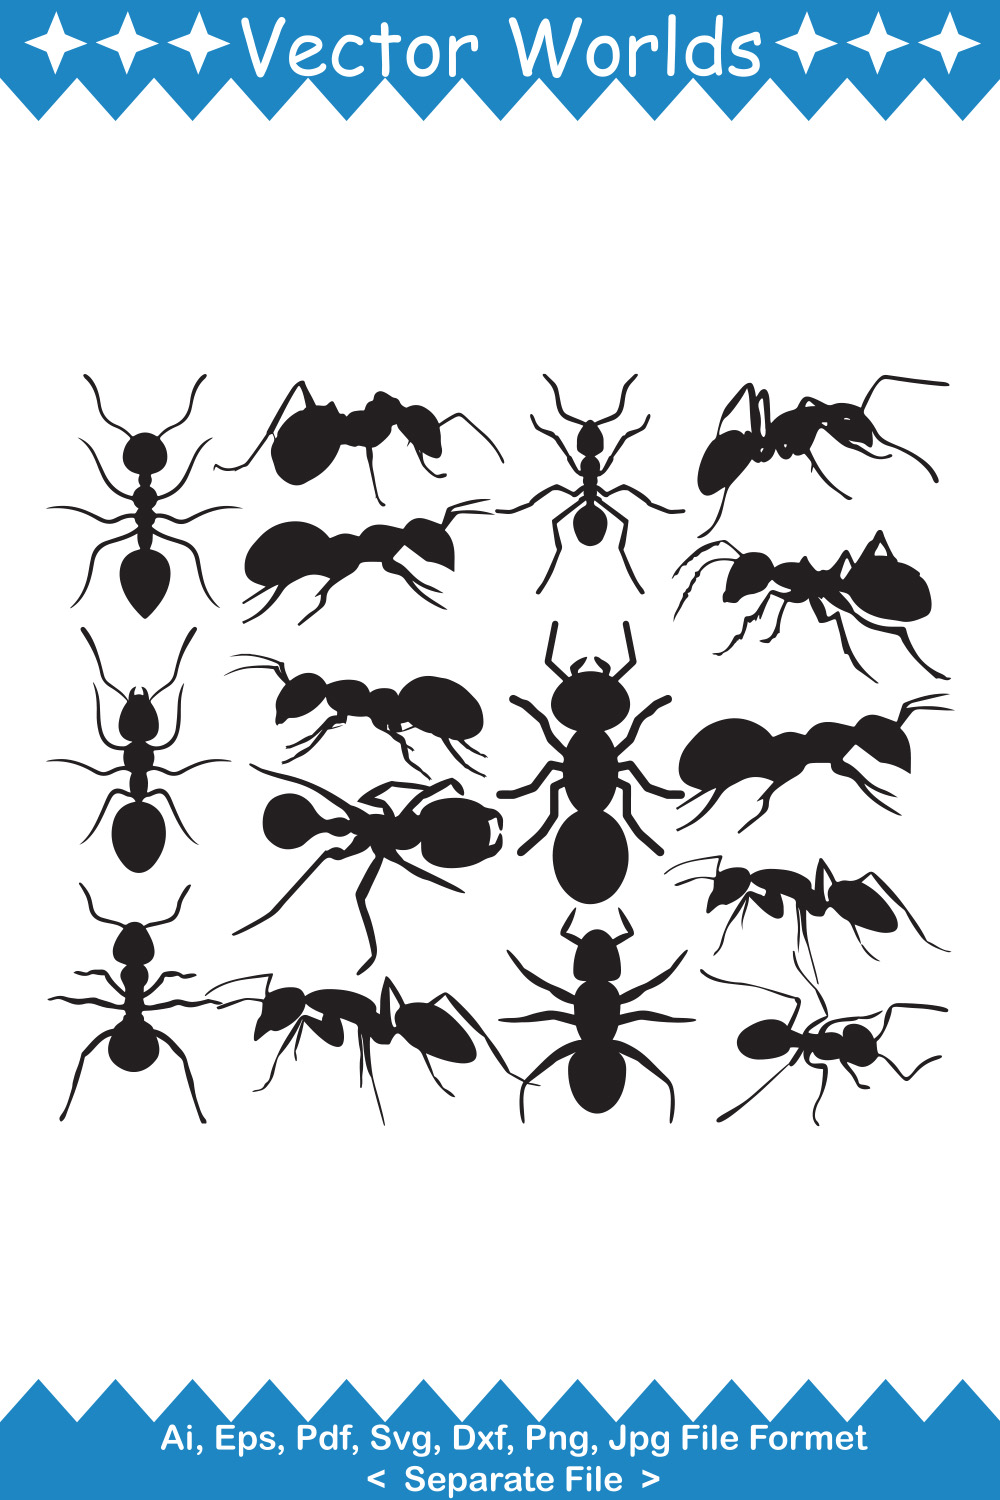 Group of ant ant ant ant ant ant ant ant ant ant ant ant ant.